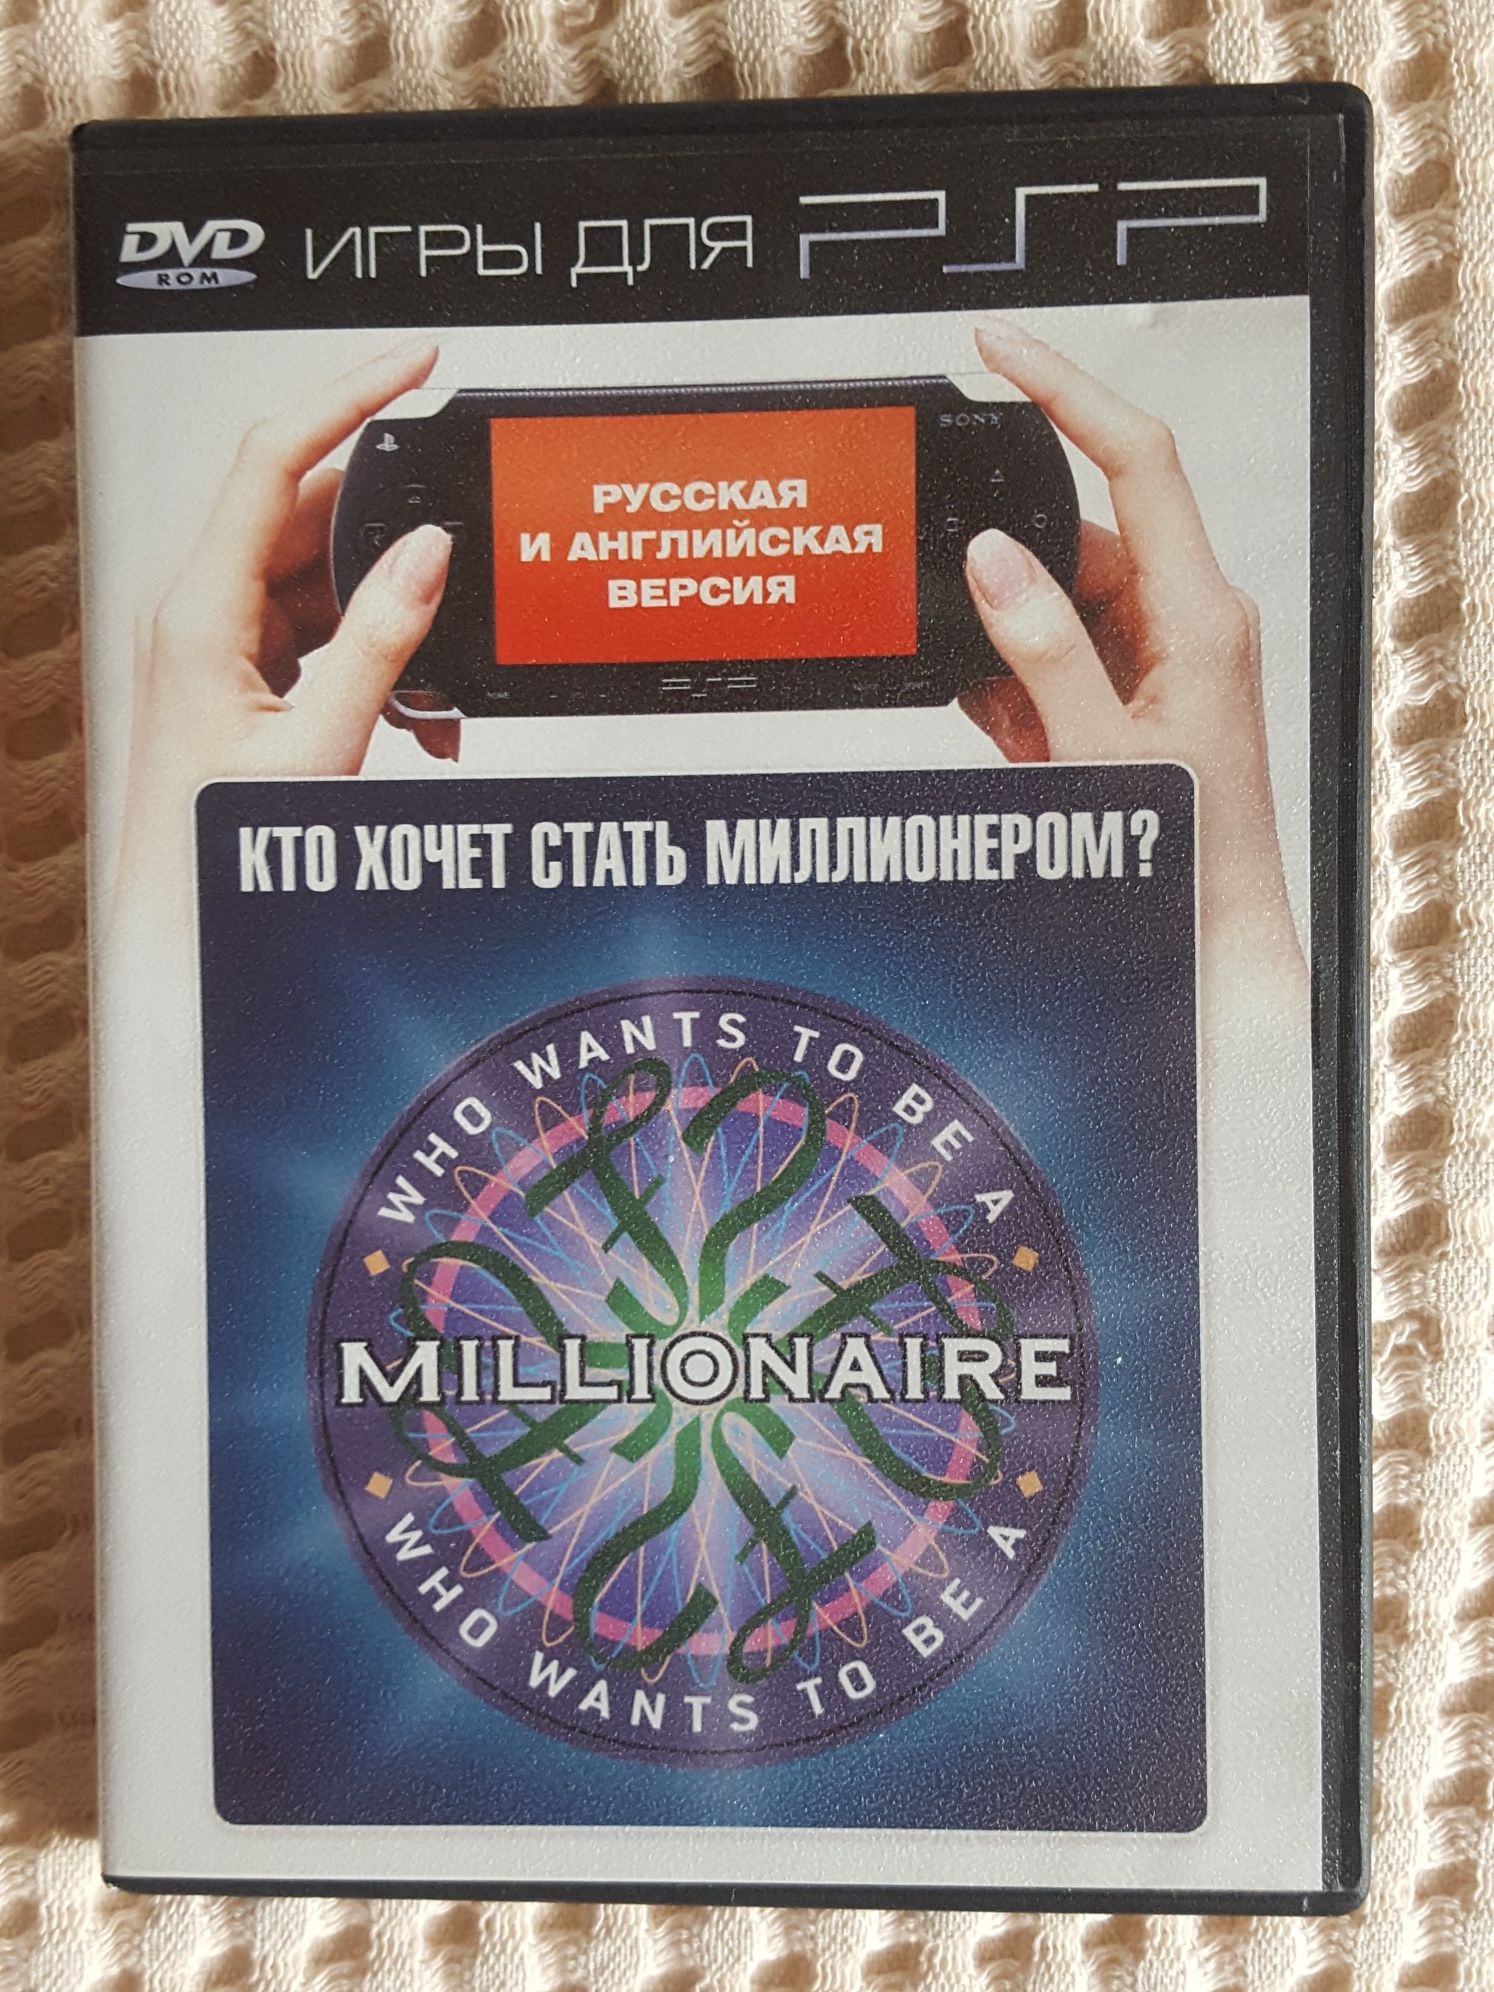 Игра для PSP на DVD "Кто хочет стать миллионером"